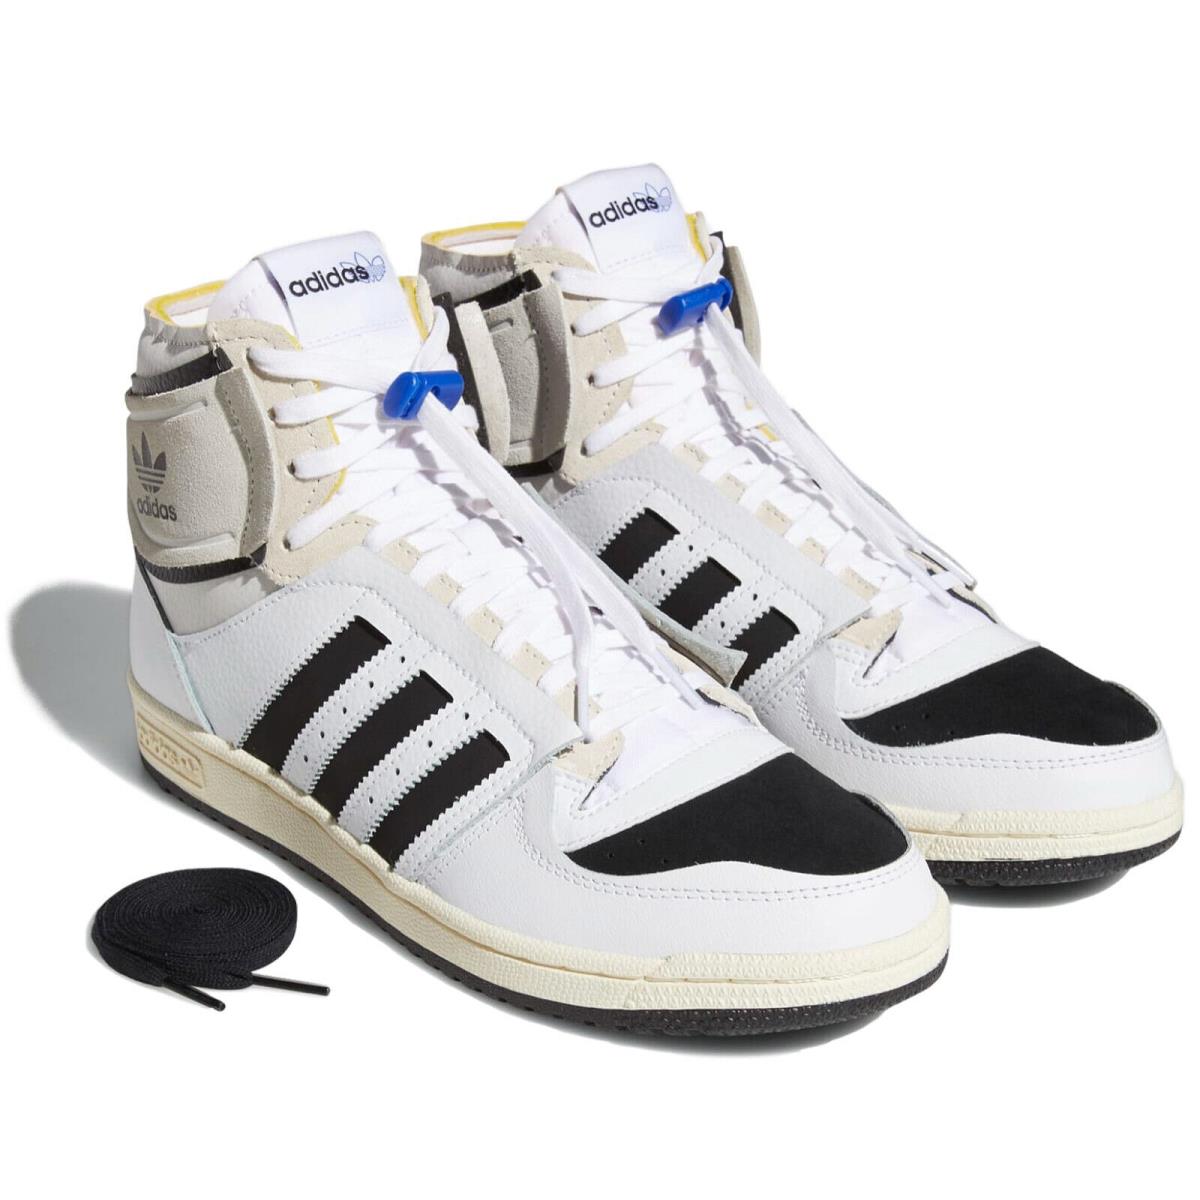 tinta Corredor lanzador Adidas Top Ten DE Mid `white Black` Men`s Retro Basketball Shoes Q46255 |  692740508009 - Adidas shoes Top Ten Mid - Cloud White/Core Black/Bold Blue  | SporTipTop